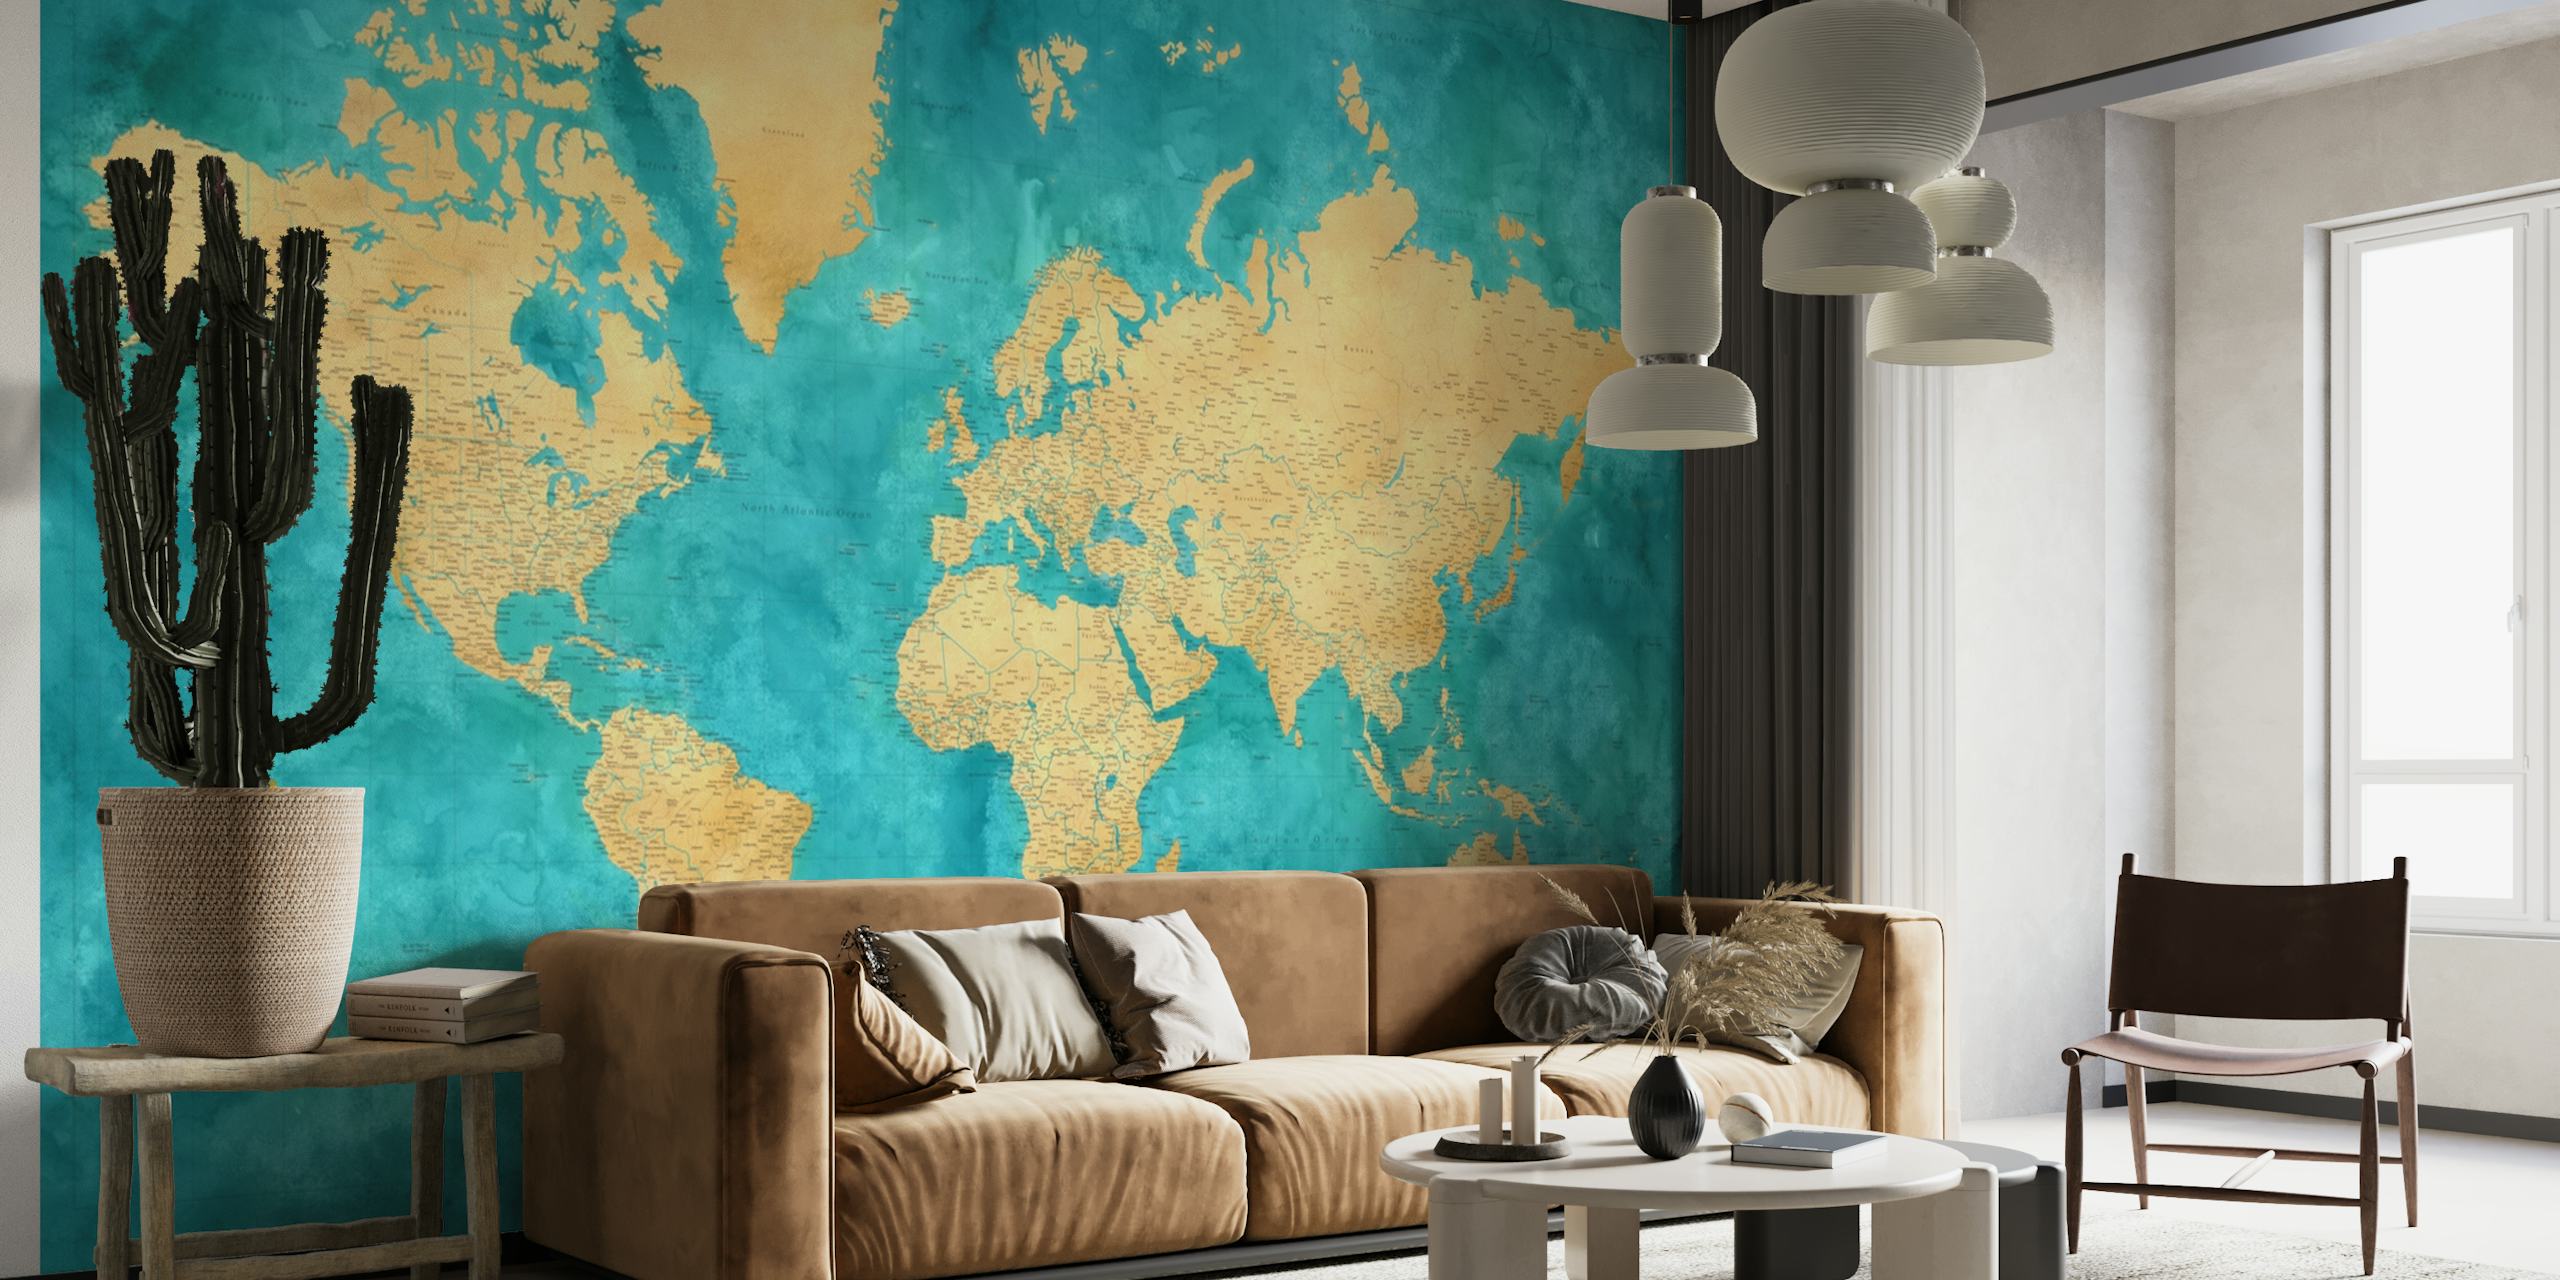 Carte du monde très détaillée Lexy, papier peint mural avec fond aquarelle turquoise